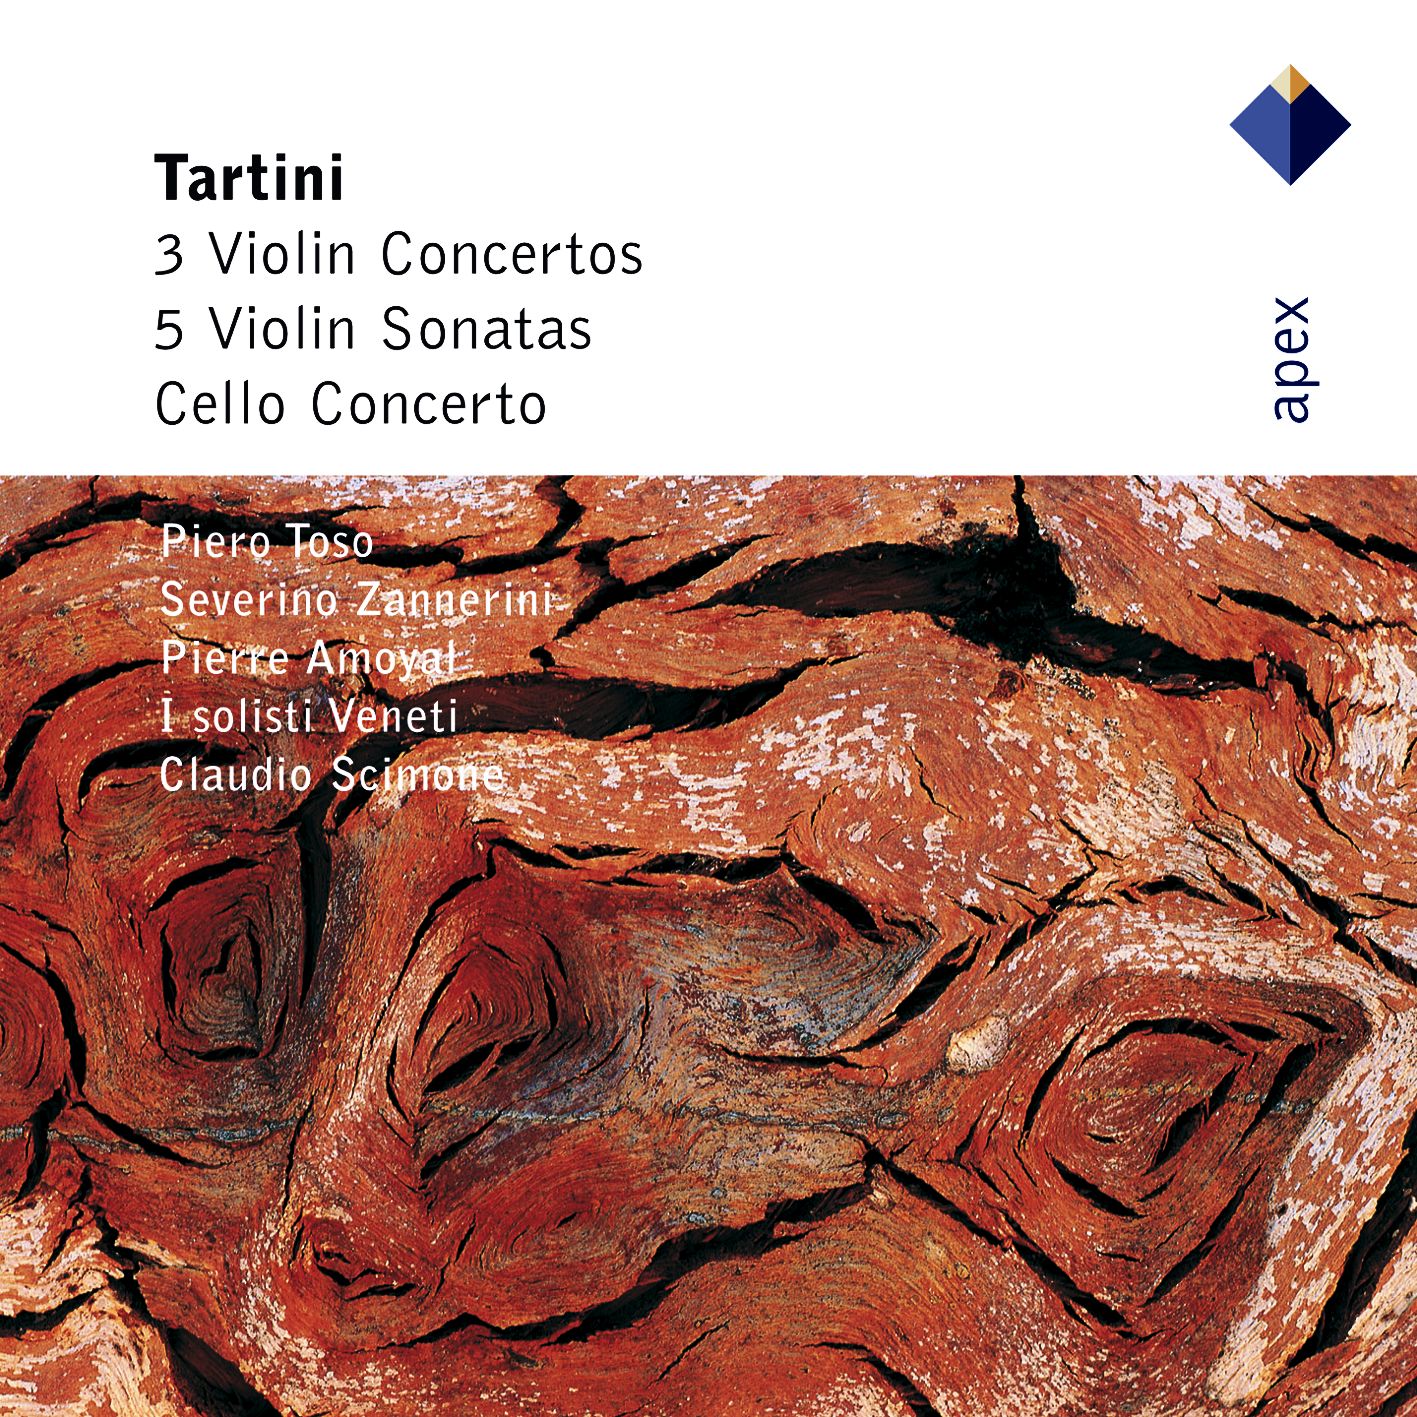 Tartini : Violin Concerto in G major D82 : I Allegro